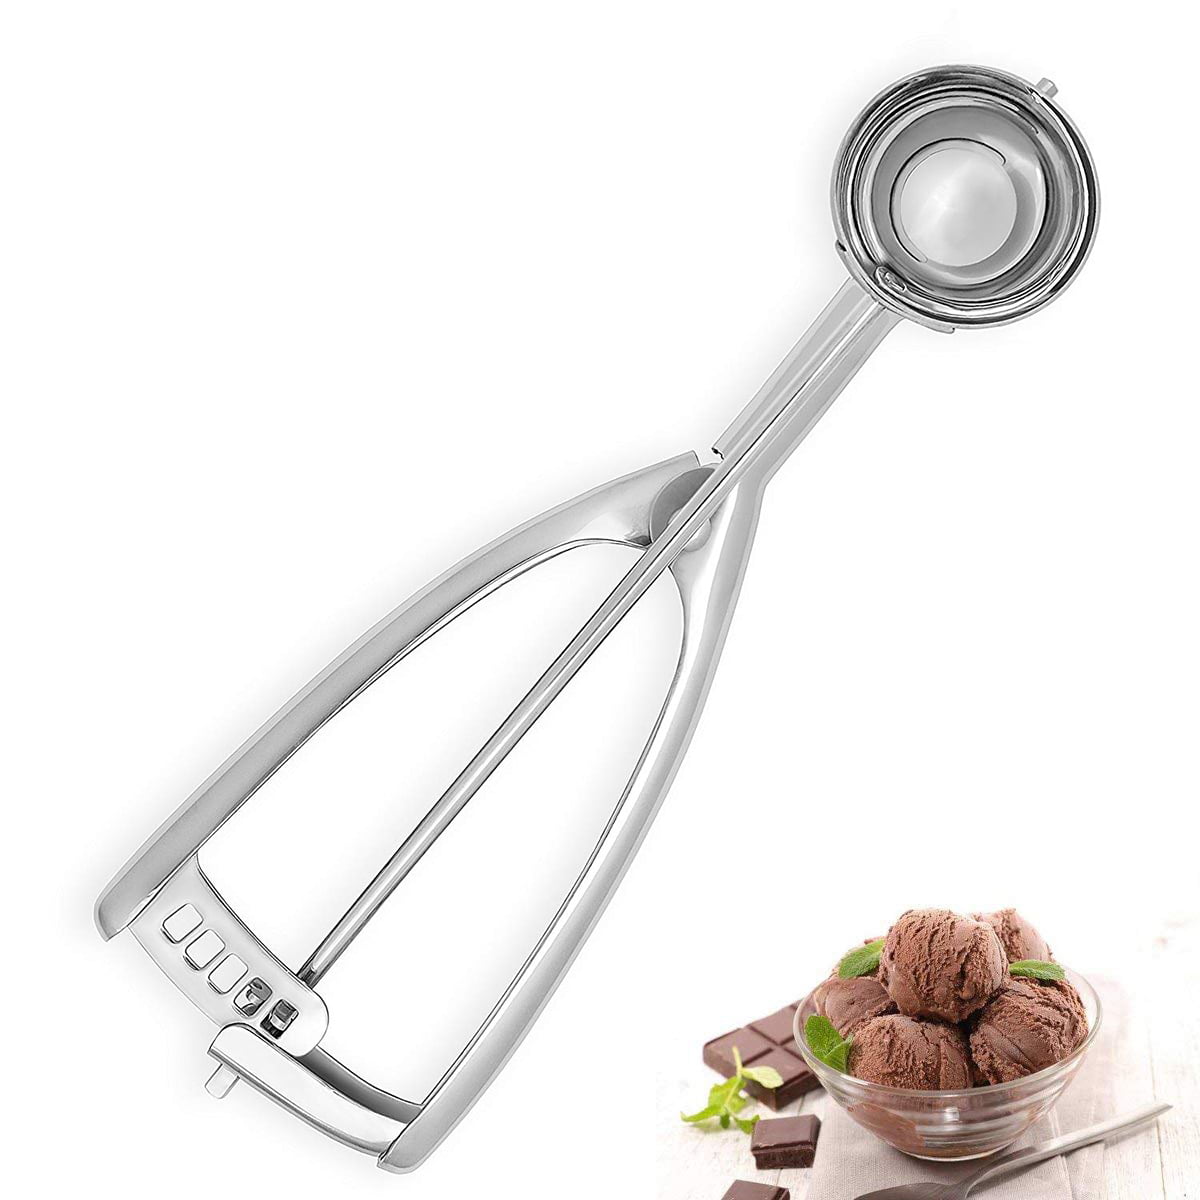 Ice Cream Scoop, Cookie Scoop, Portion Control Scoop - Squeeze Handle for  Food Release - Stainless Steel - Met Lux - 1ct Box - Restaurantware